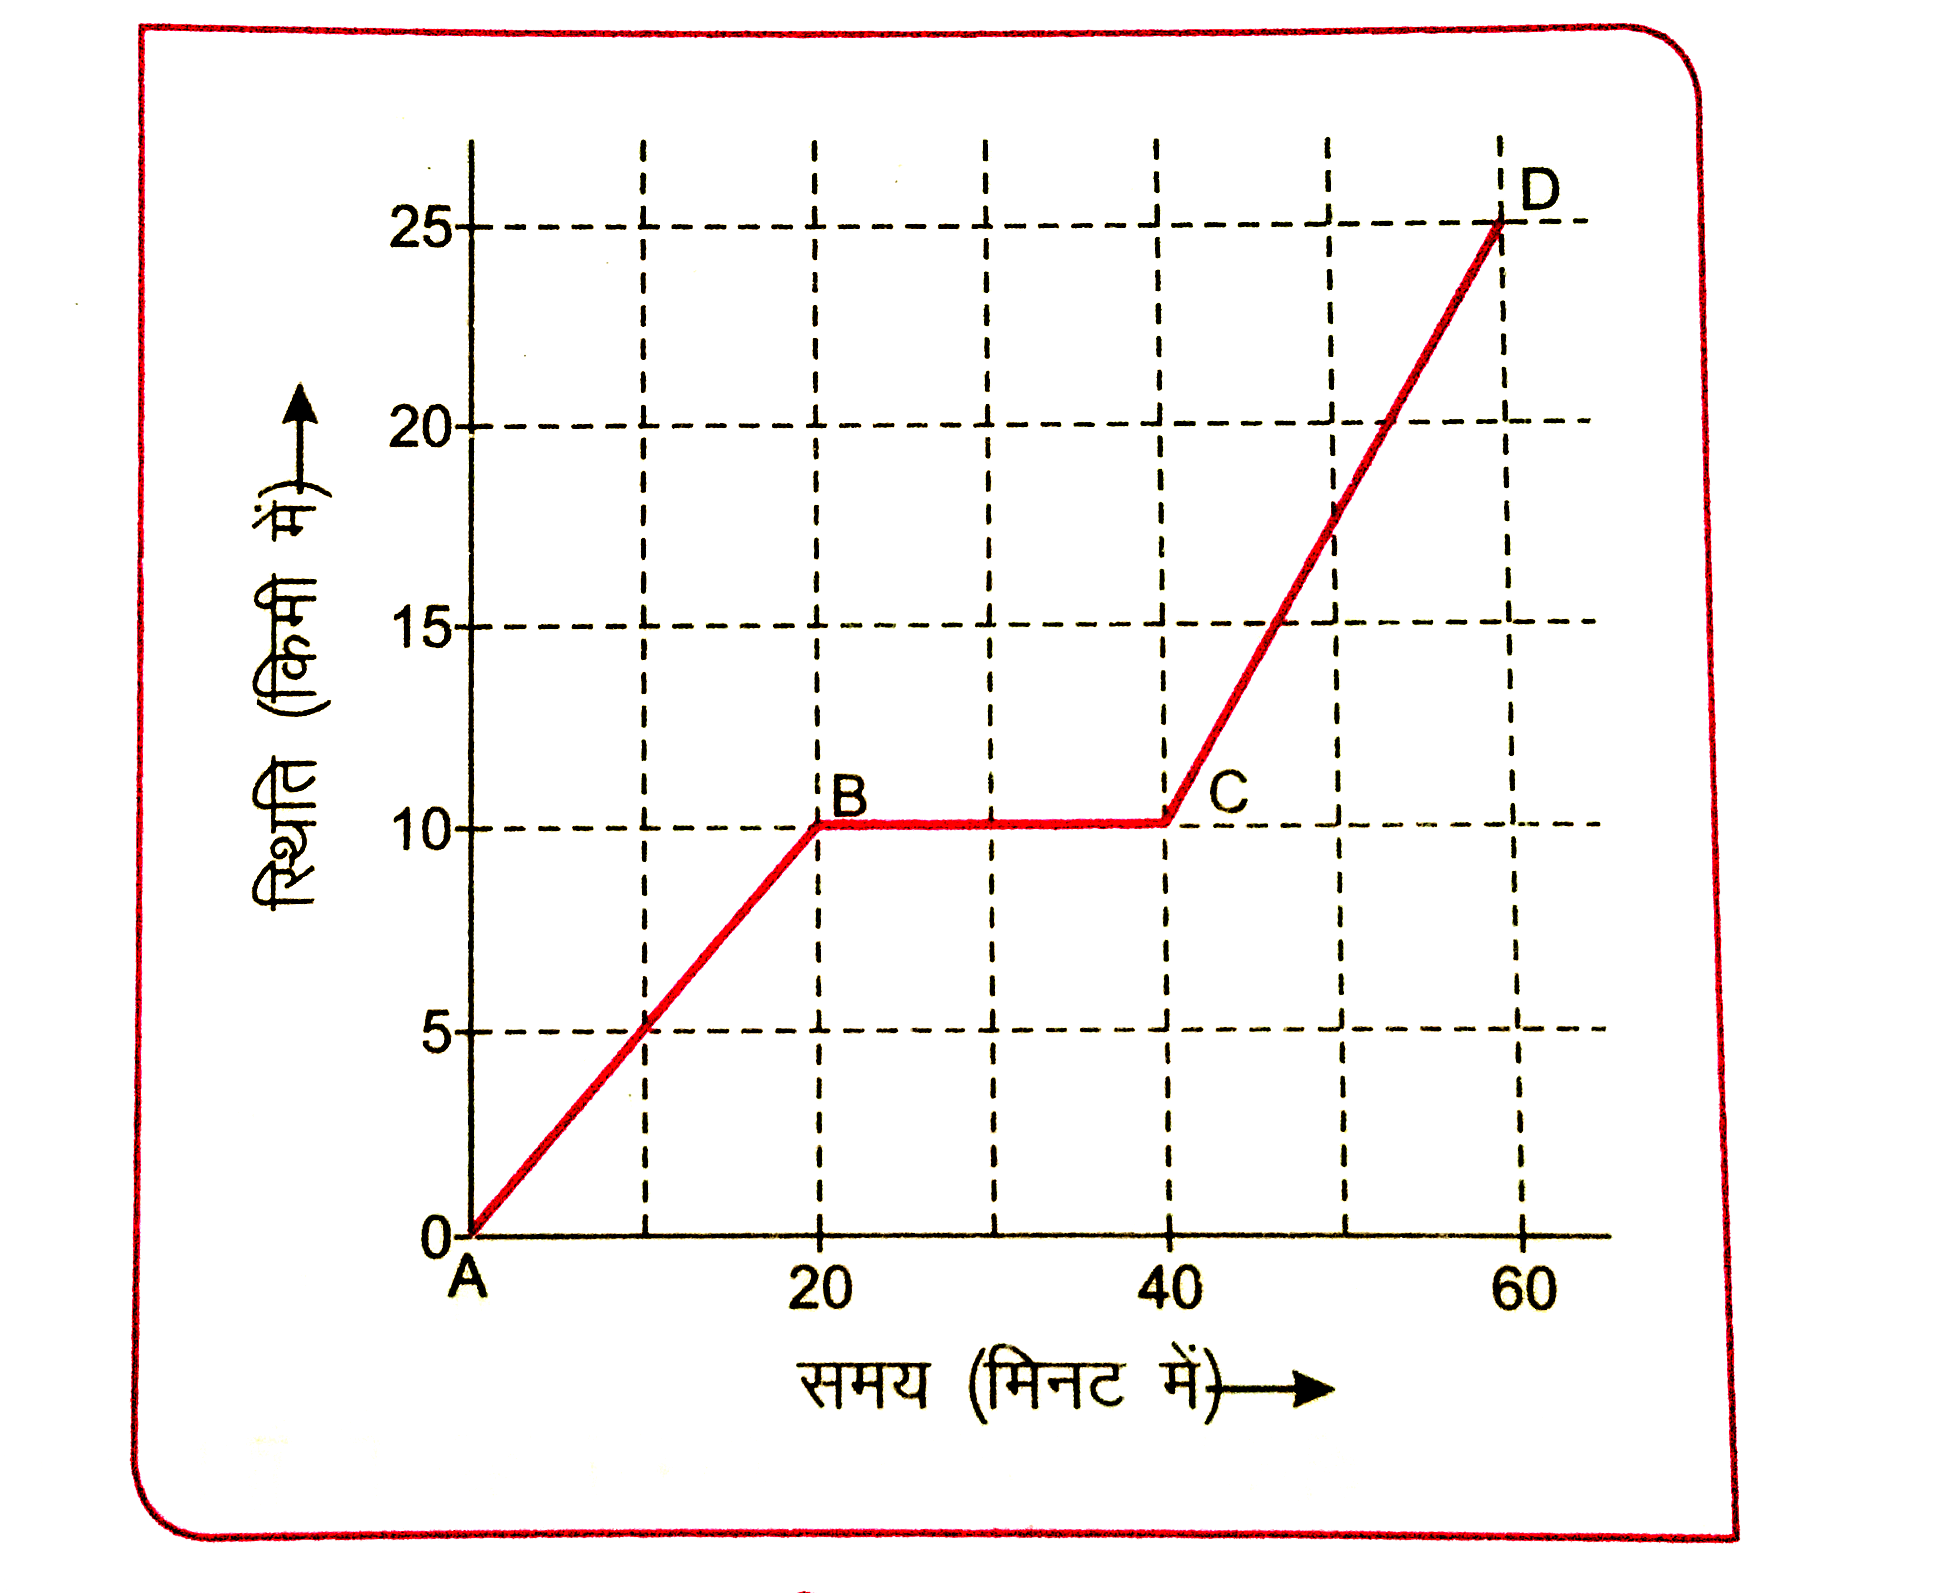 चित्र 3.40 में सीधी रेखा में गतिशील कार स्थिति - समय ग्राफ प्रदर्शित है । ग्राफ की सहायता से ज्ञात कीजिए :   ग्राफ के भाग BC में कार की गति की प्रकृति ।